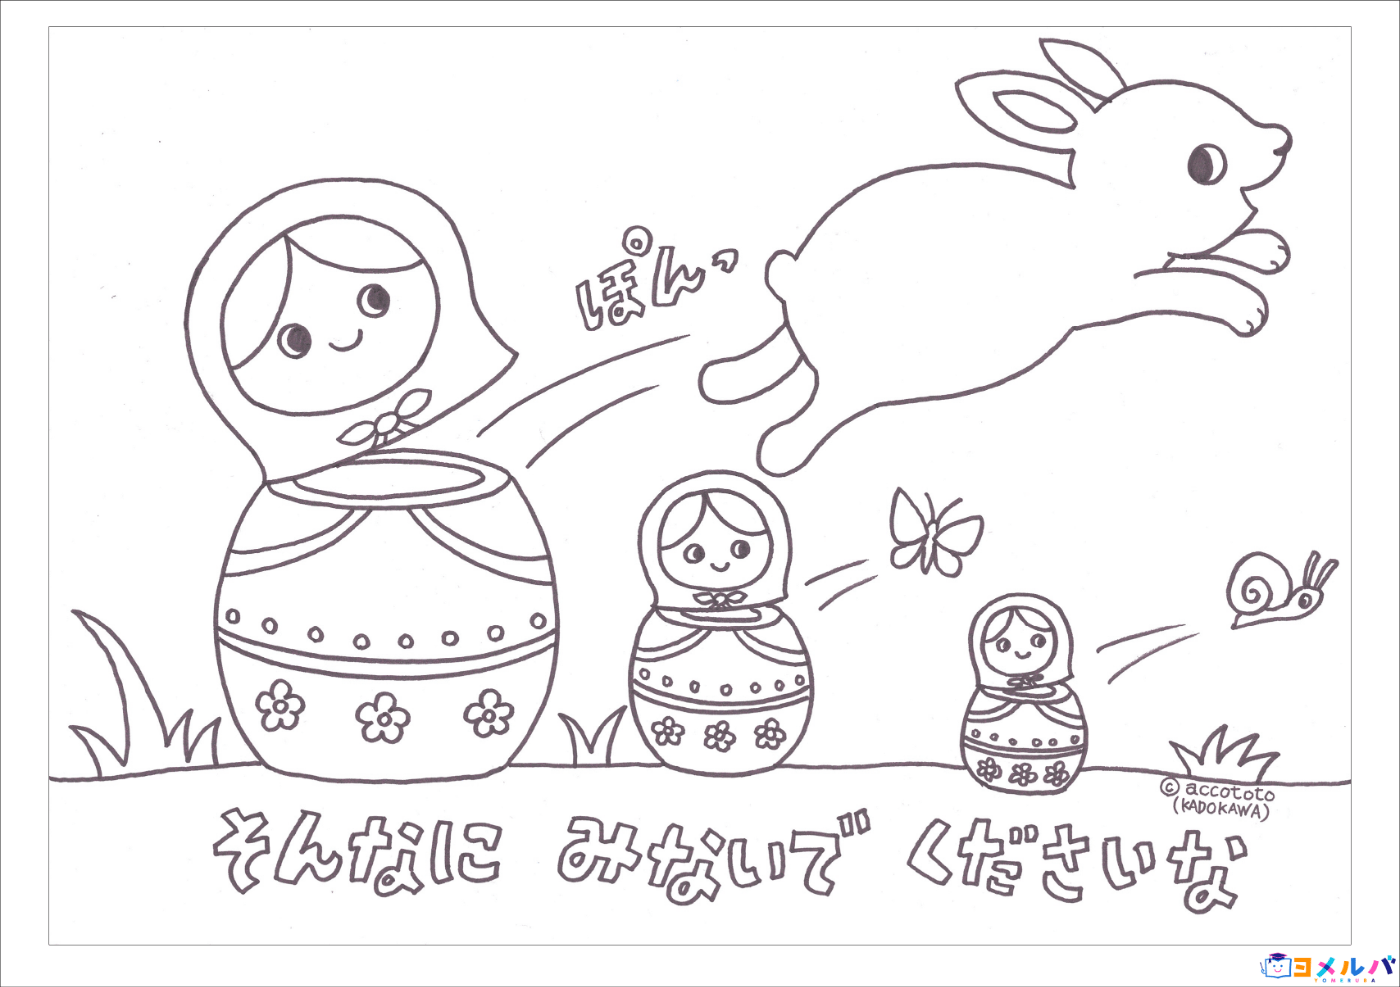 おうちで過ごす子どもたちに元気を Accototoさんから ぬりえのプレゼント ヨメルバ Kadokawa児童書ポータルサイト